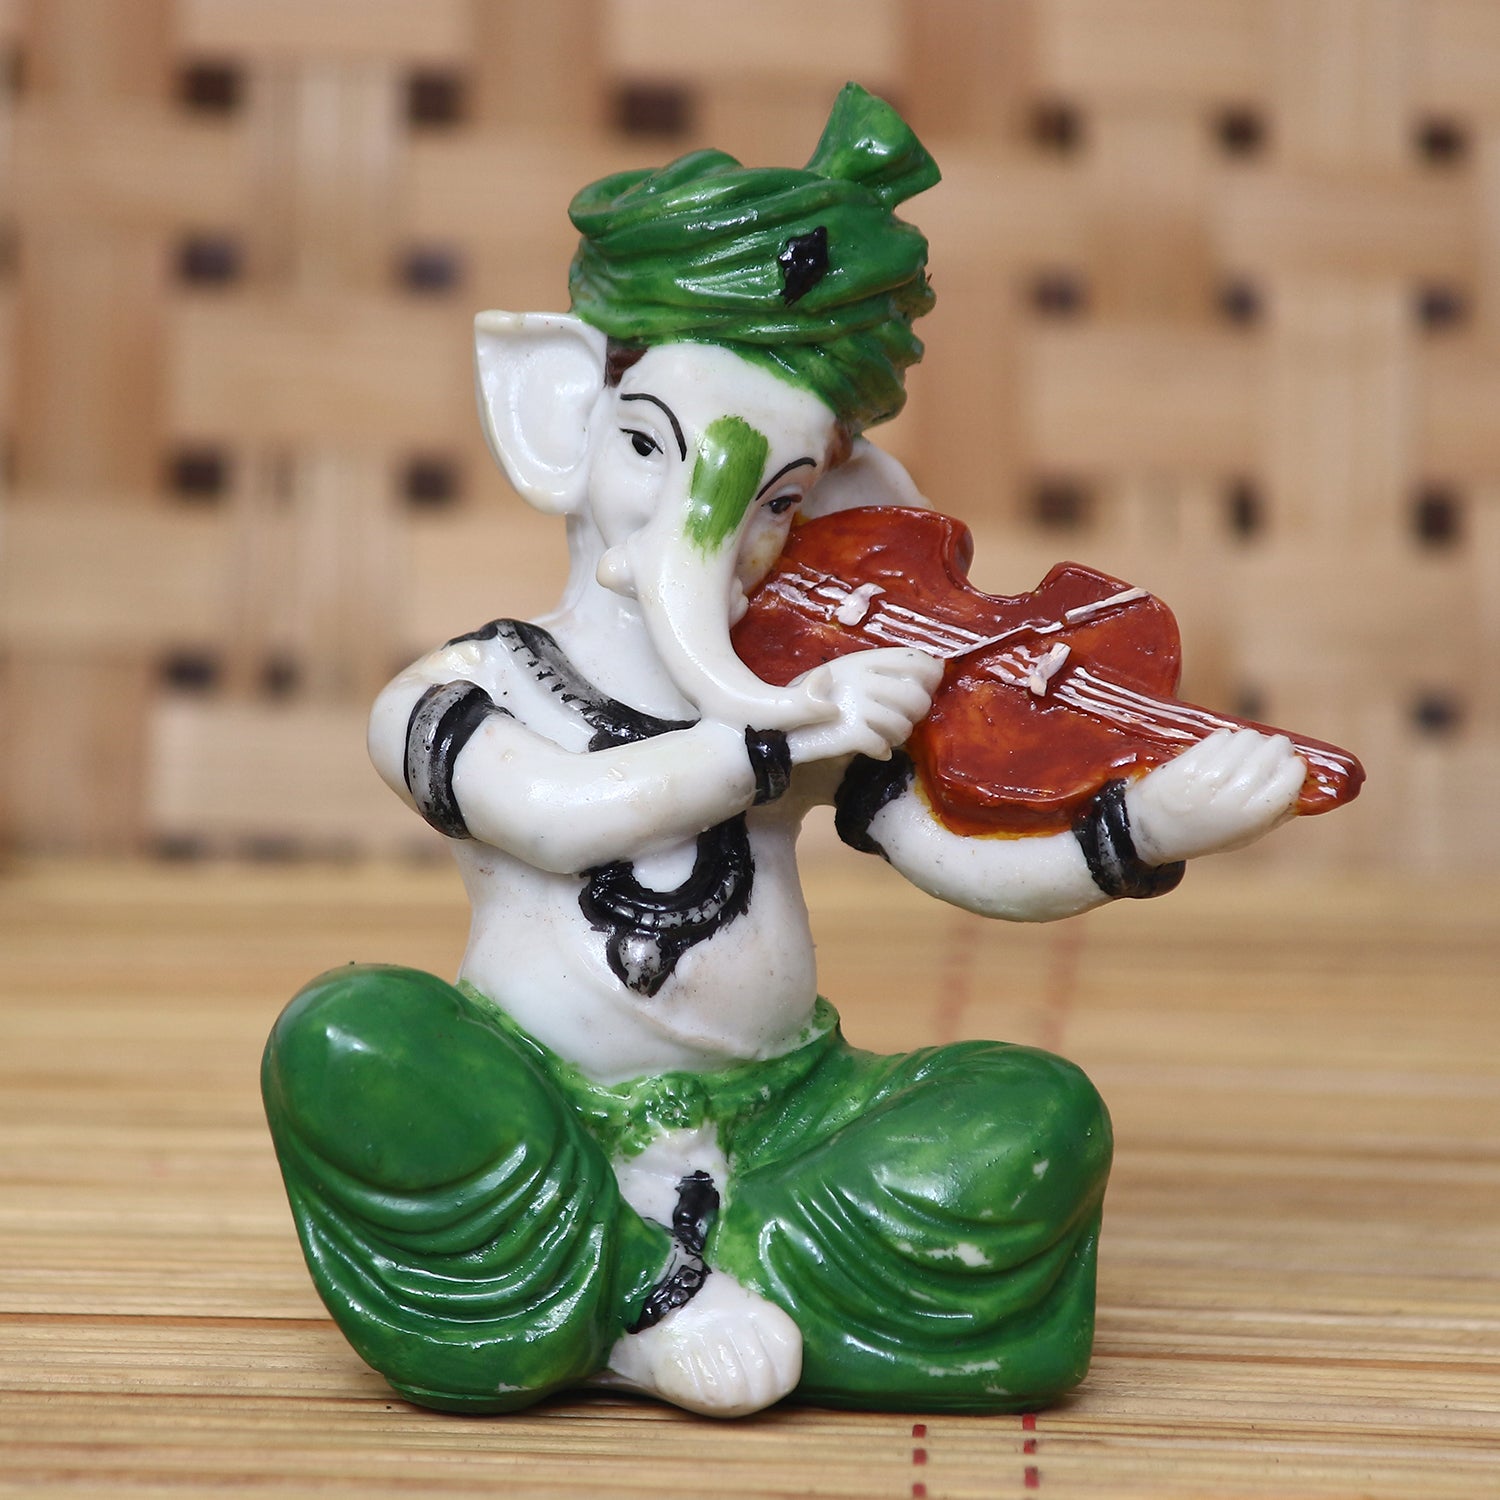 Lord Ganesha playing Violin 1